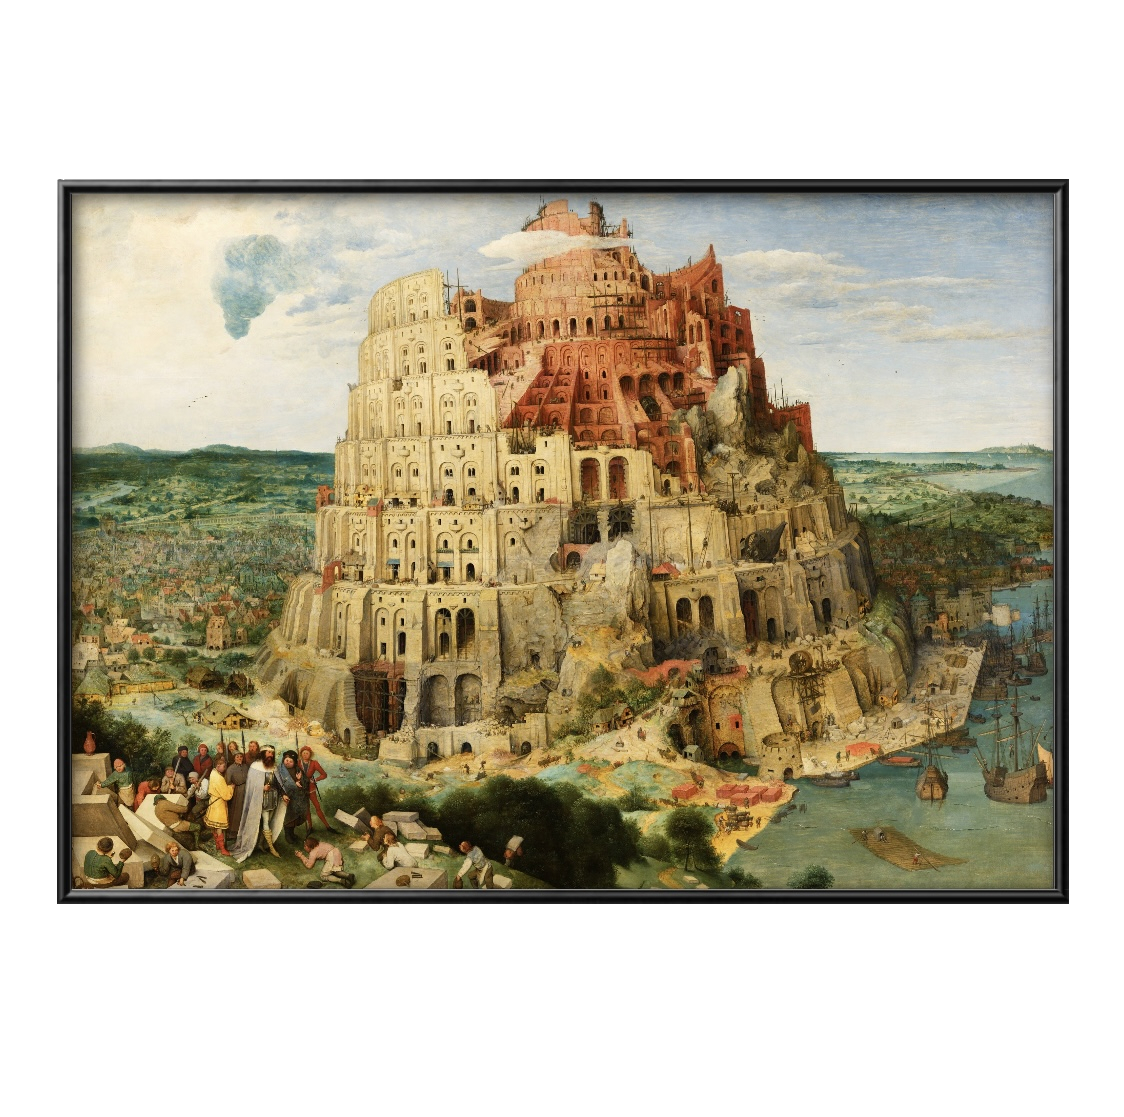 6780■Envío gratis!! Póster artístico pintura tamaño A3 Pieter Bruegel Torre de Babel diseño de ilustración papel mate nórdico, Alojamiento, interior, otros